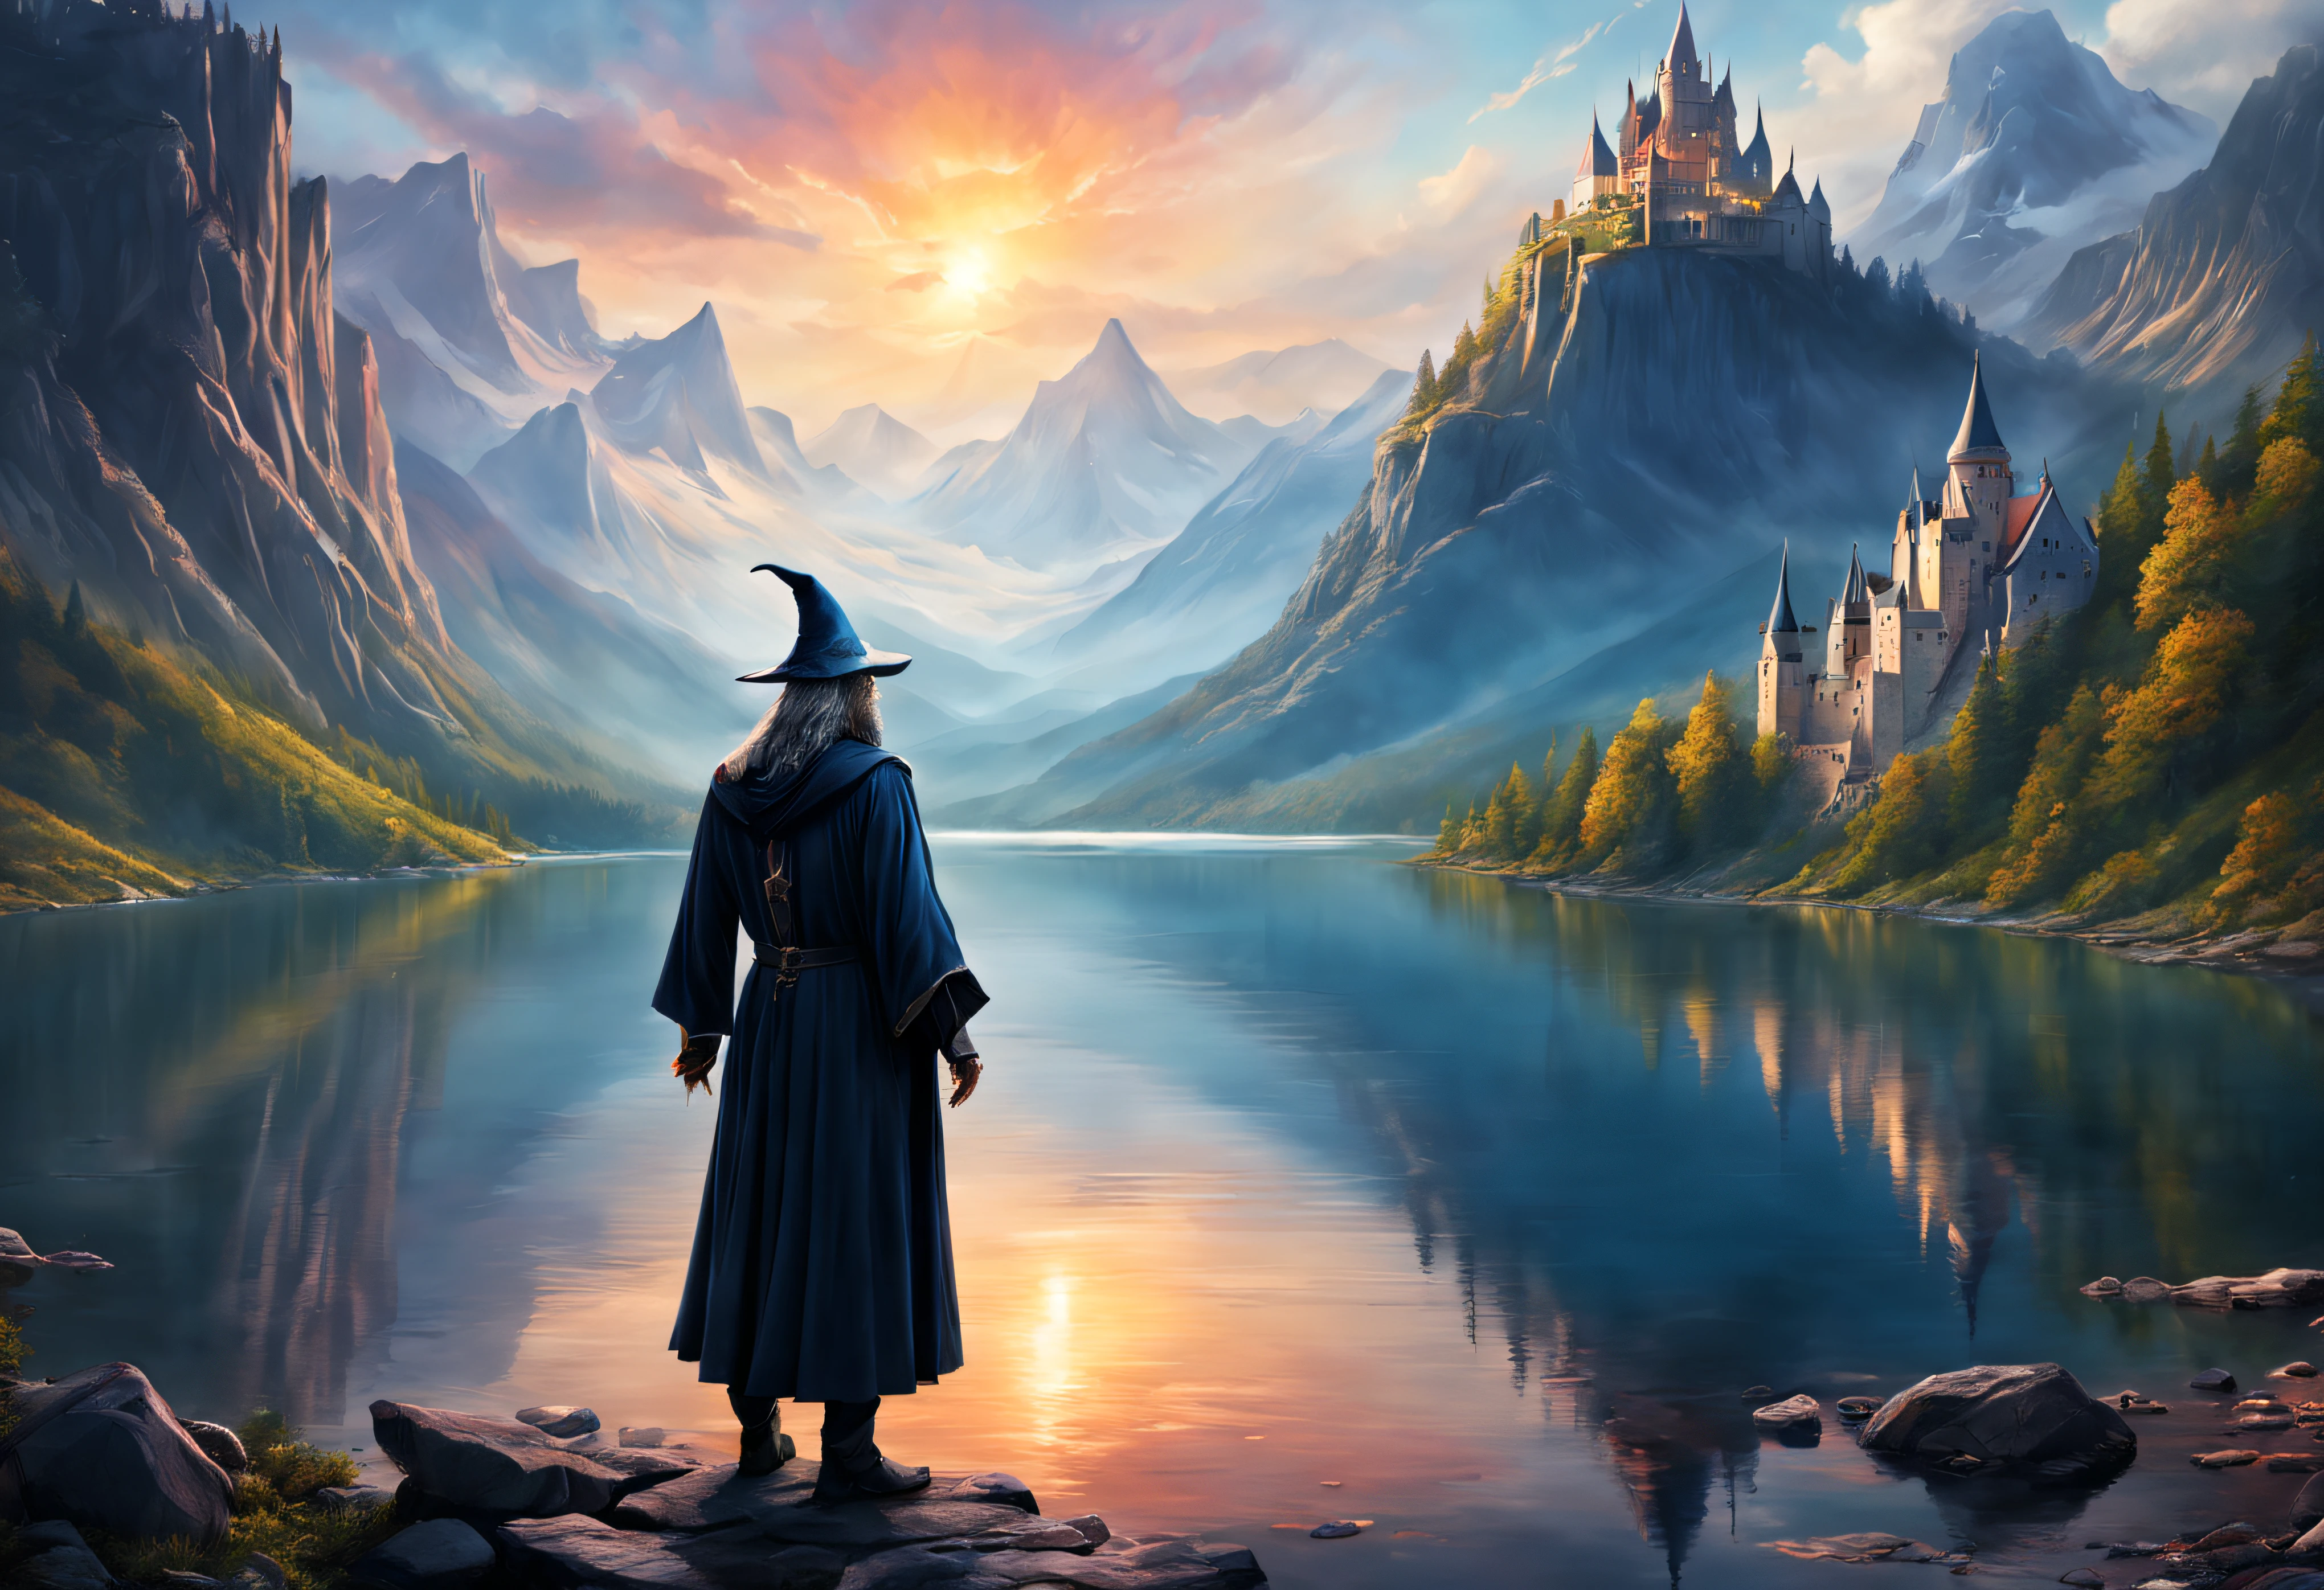 صورة فنية خيالية لساحر قوي ينظر عبر بحيرة في قلعة بجانب الجبل.